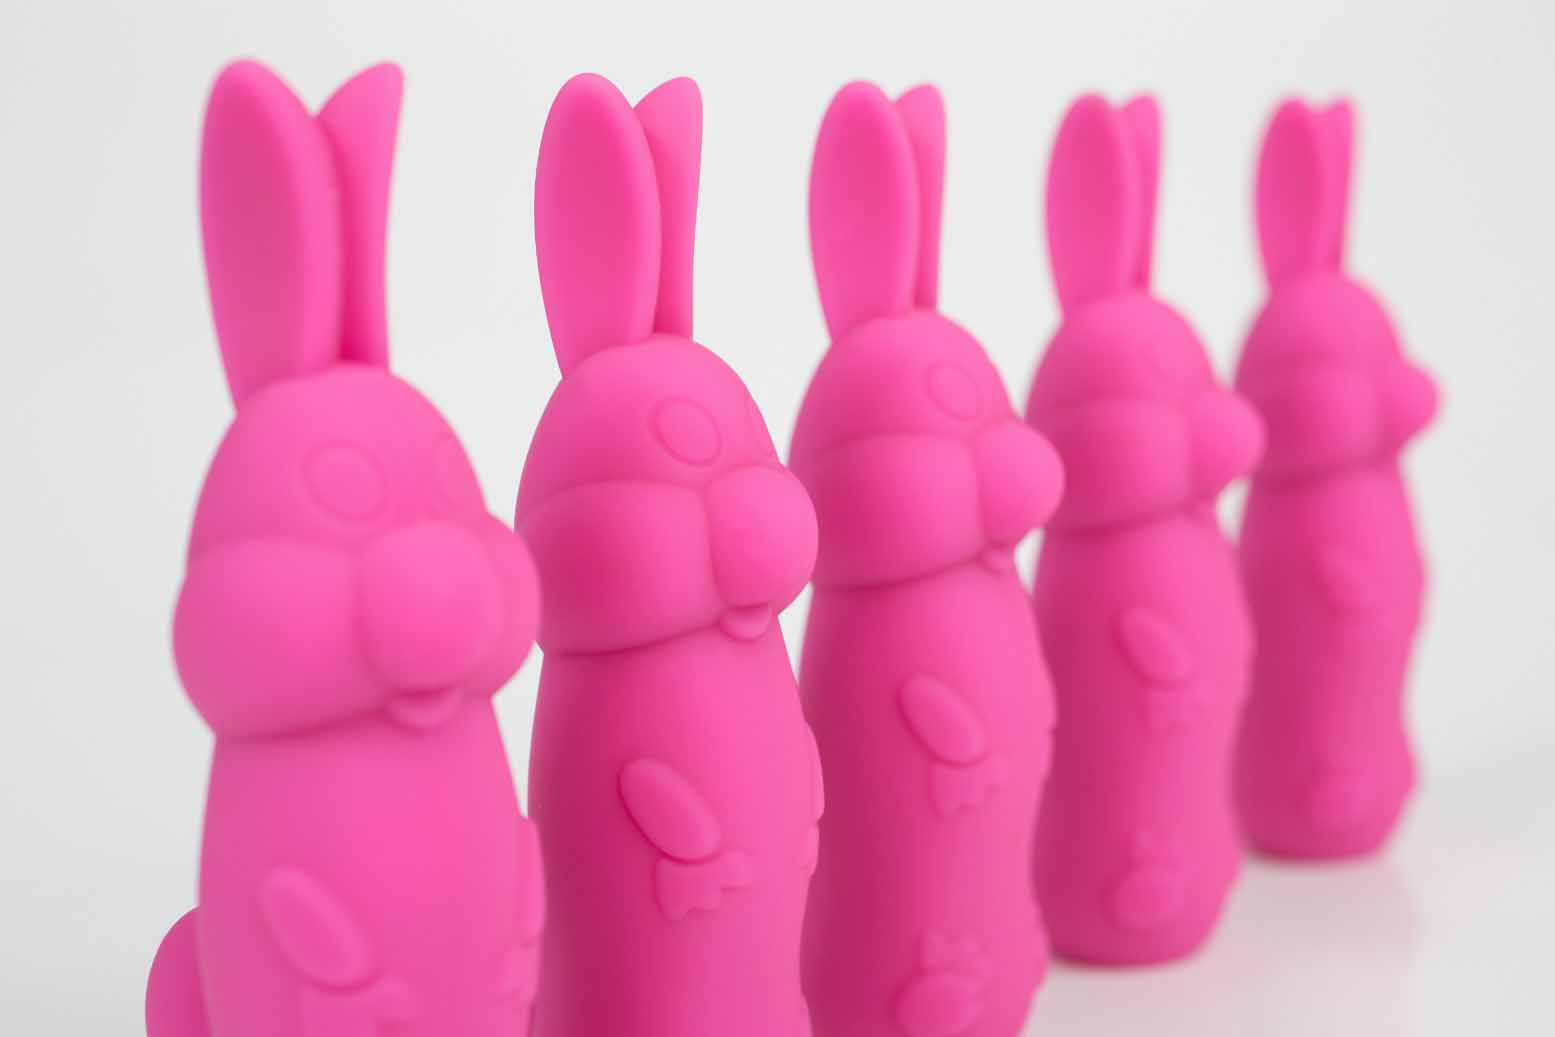 pink rabbit vibrators in a line